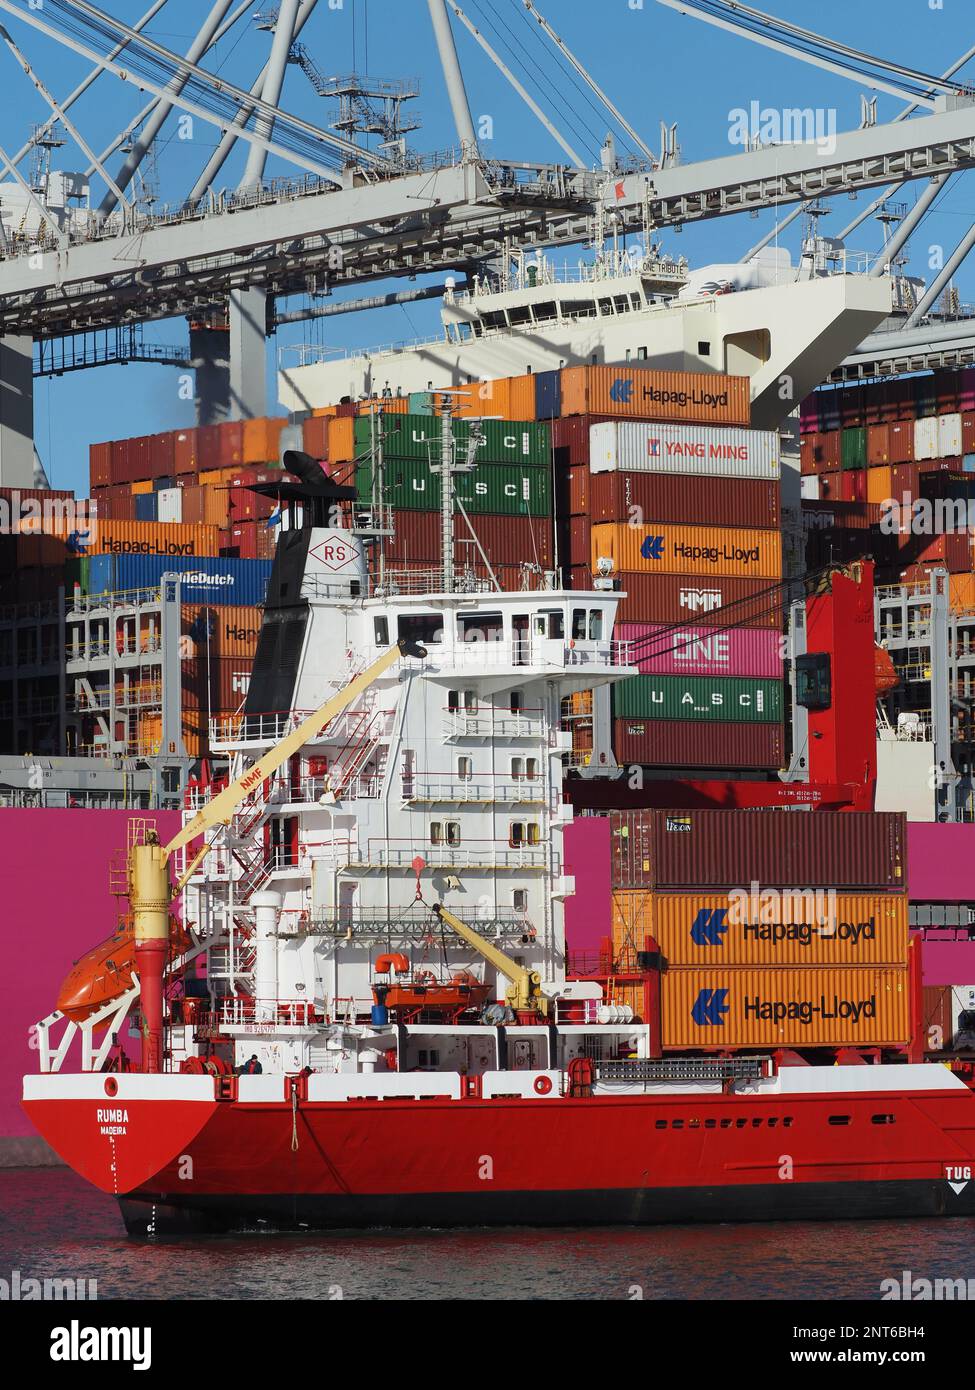 Gran buque de contenedores rosa de la red japonesa ONE Ocean Network Express con pequeño buque de contenedores junto a él en el puerto de Rotterdam, Países Bajos Foto de stock